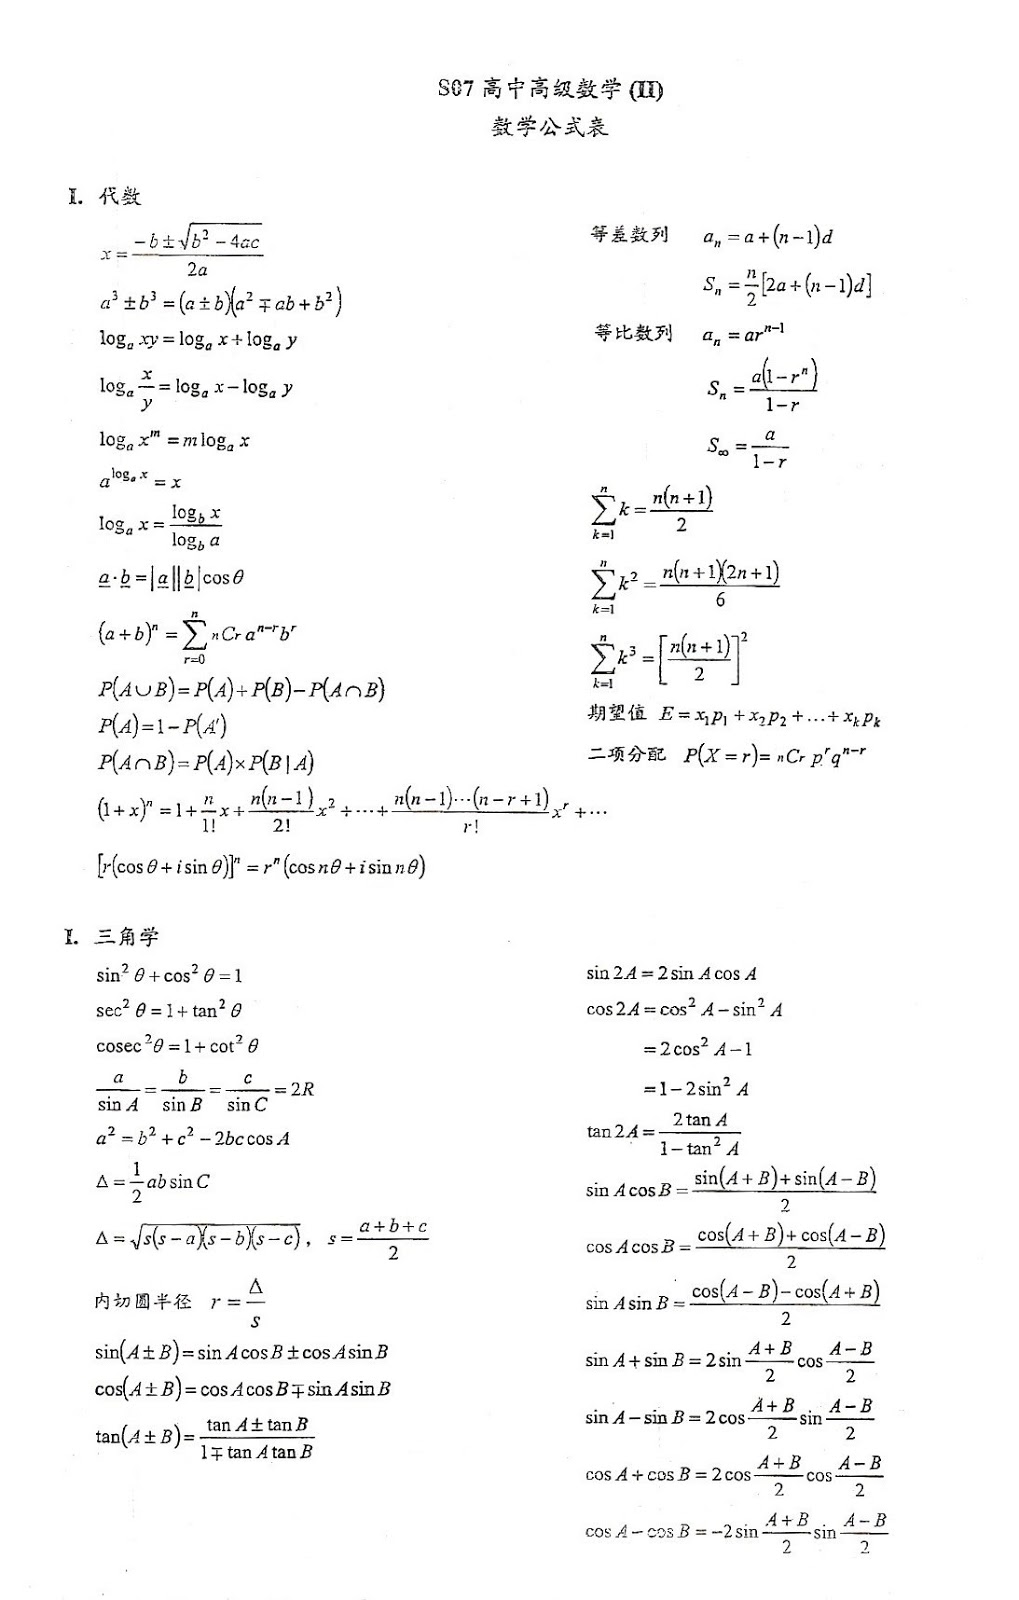 一個獨中生的分享 大马中学数学公式表 考试 下载